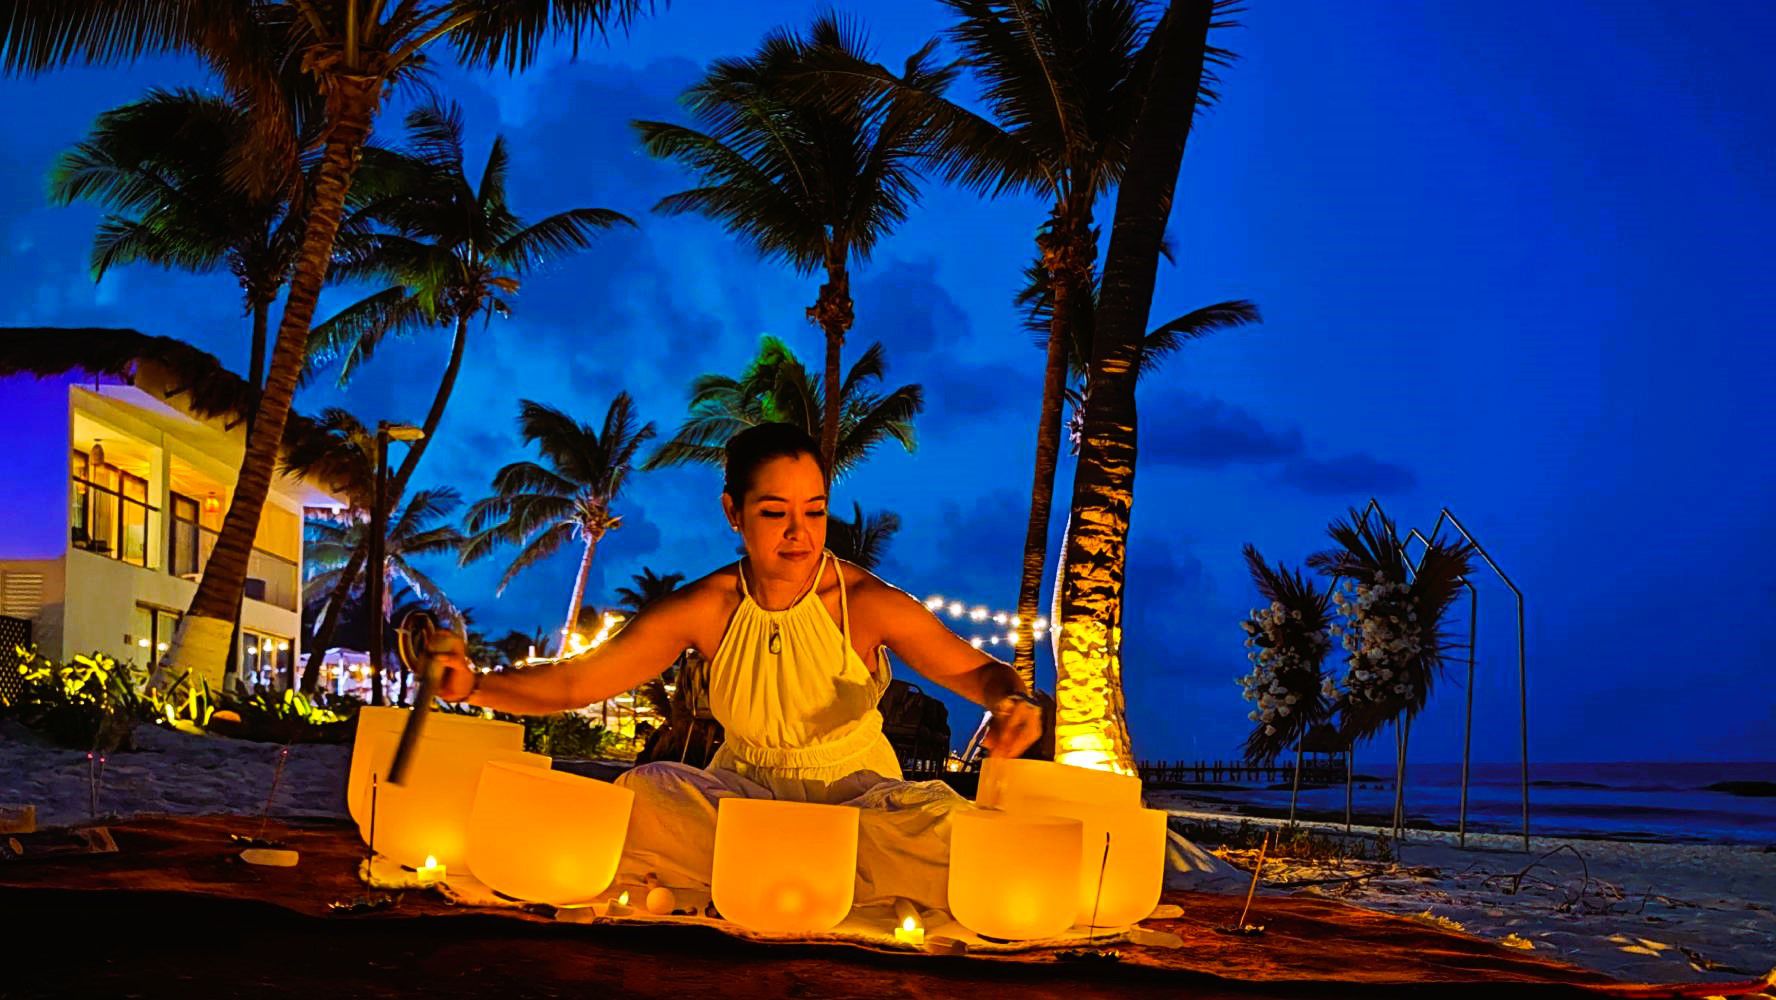 The Beachfront ofrece servicios de bienestar, como masajes y terapias de sonido frente al mar. (Foto: Nayeli Reyes).